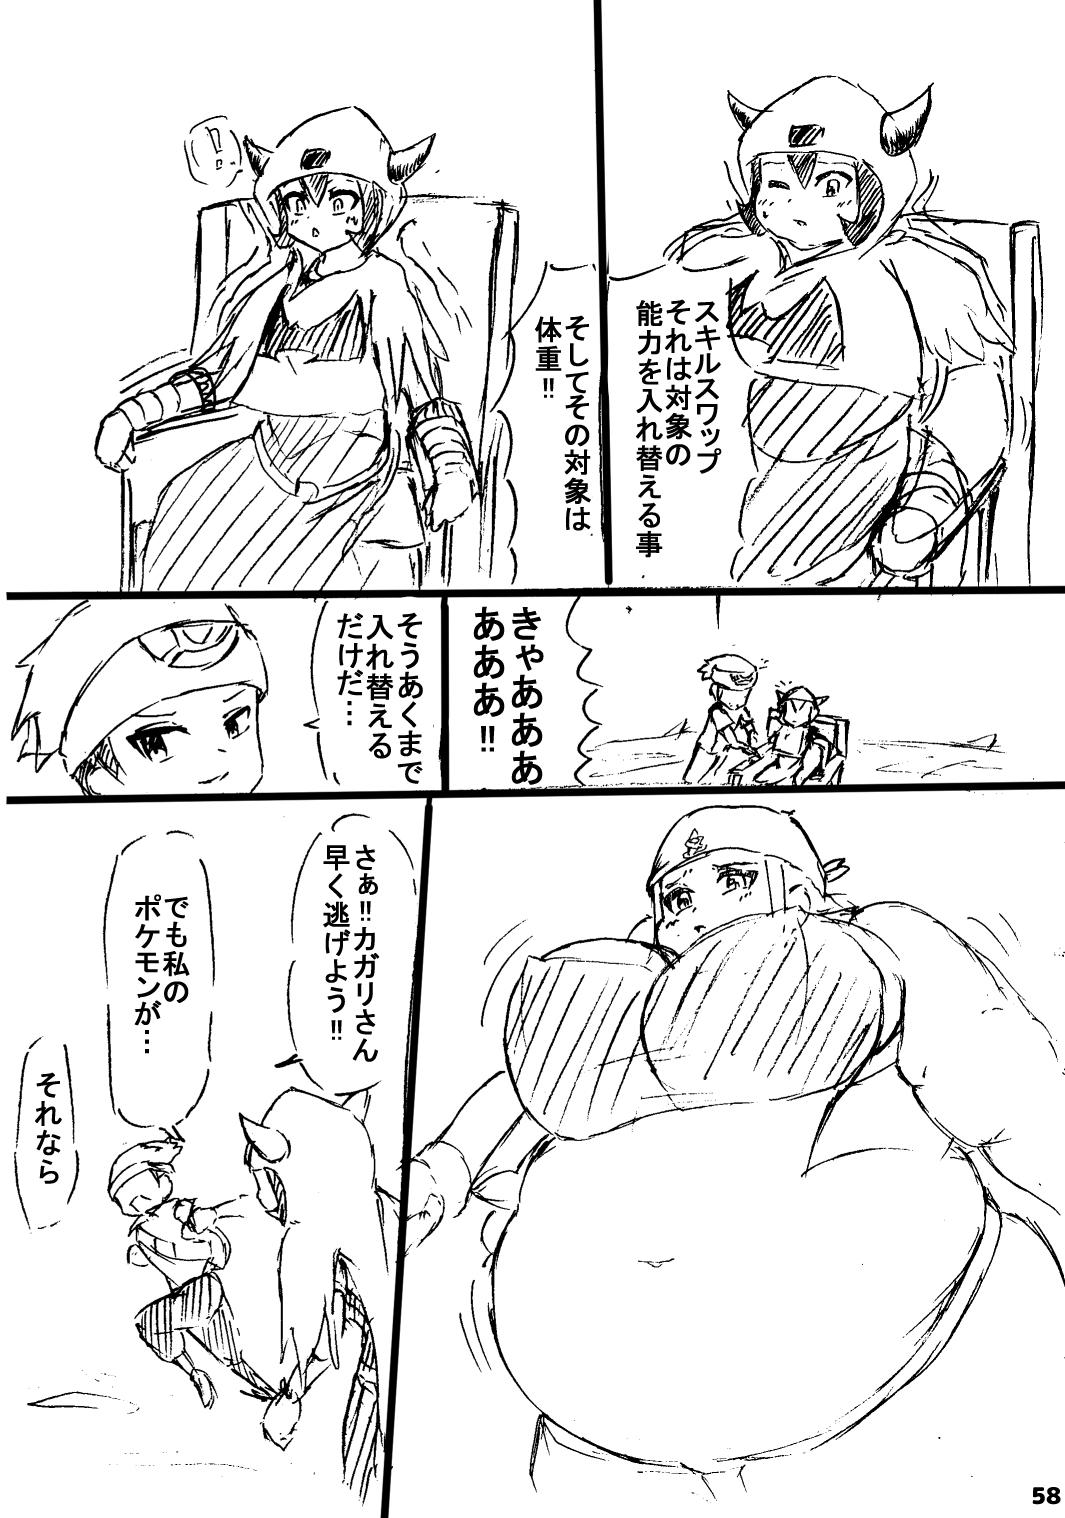 ポケスペカガリ肥満化漫画 56